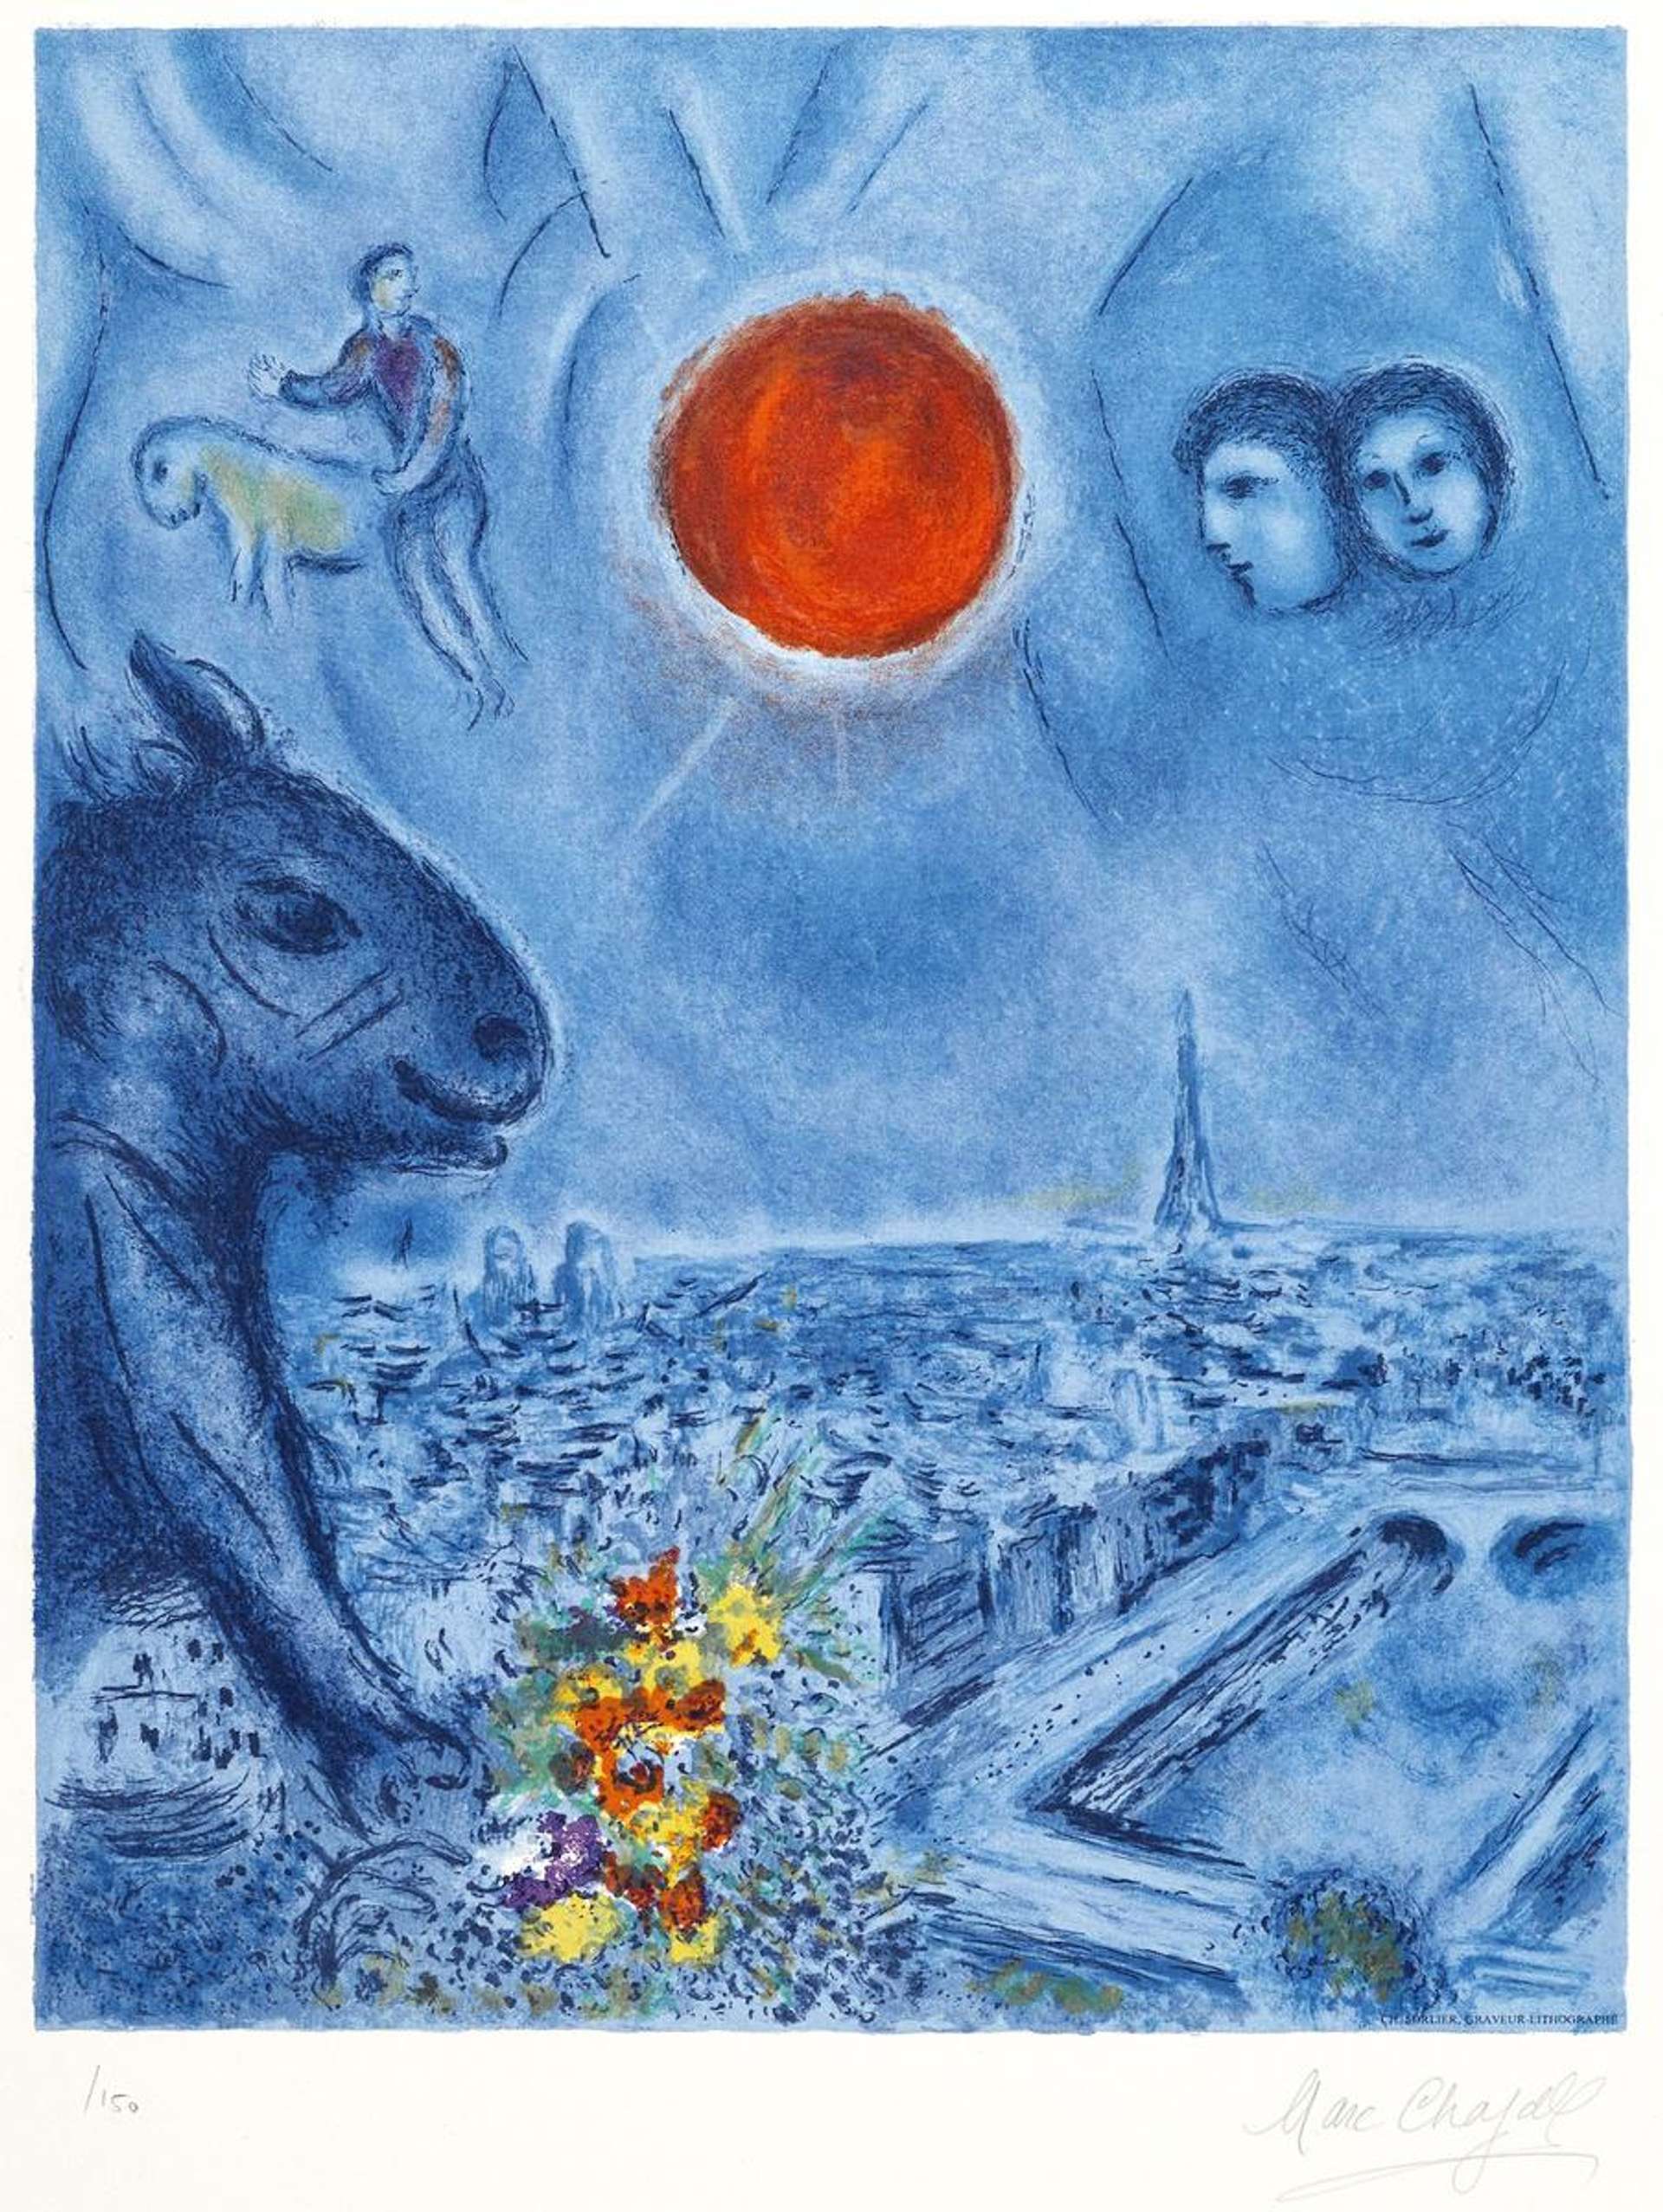 Le Soleil De Paris - Signed Print by Marc Chagall 1977 - MyArtBroker